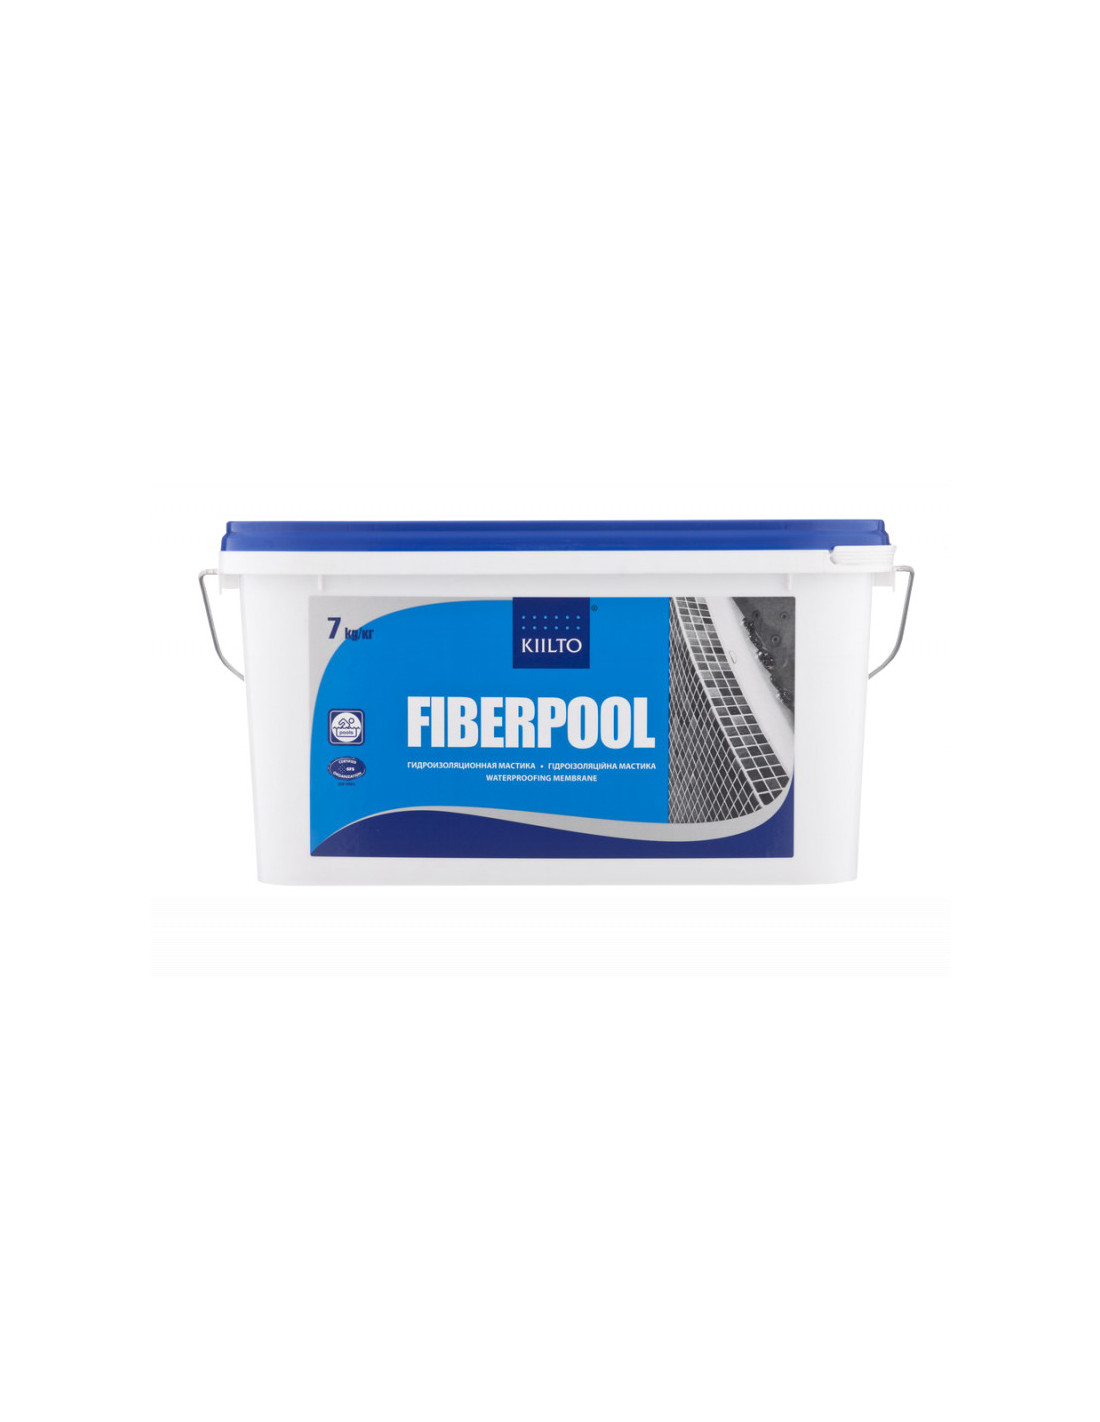 Гидроизоляционная мастика для влажных помещений Kiilto Fiberpool, 7 кг.